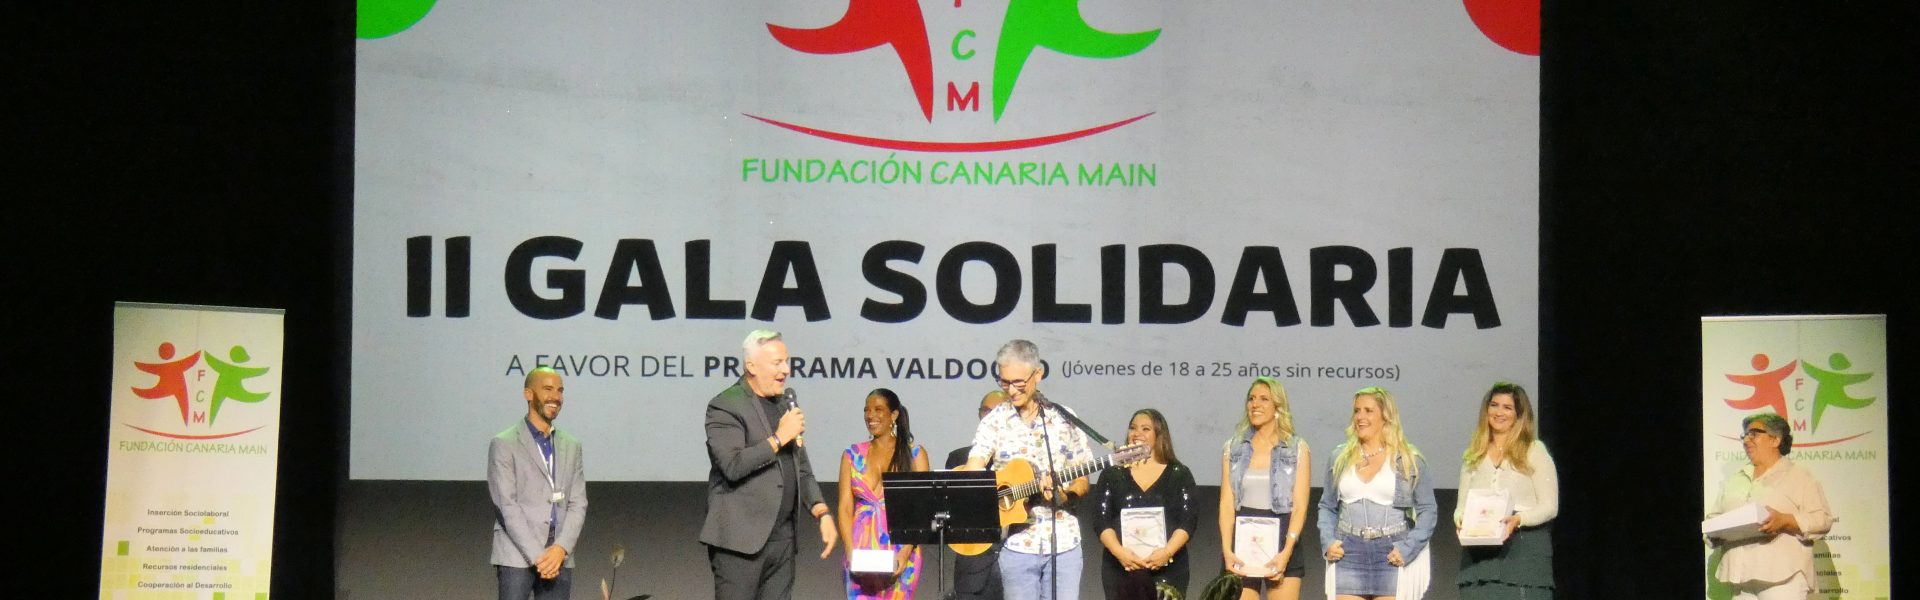 II Gala Solidaria a favor del Programa Valdocco